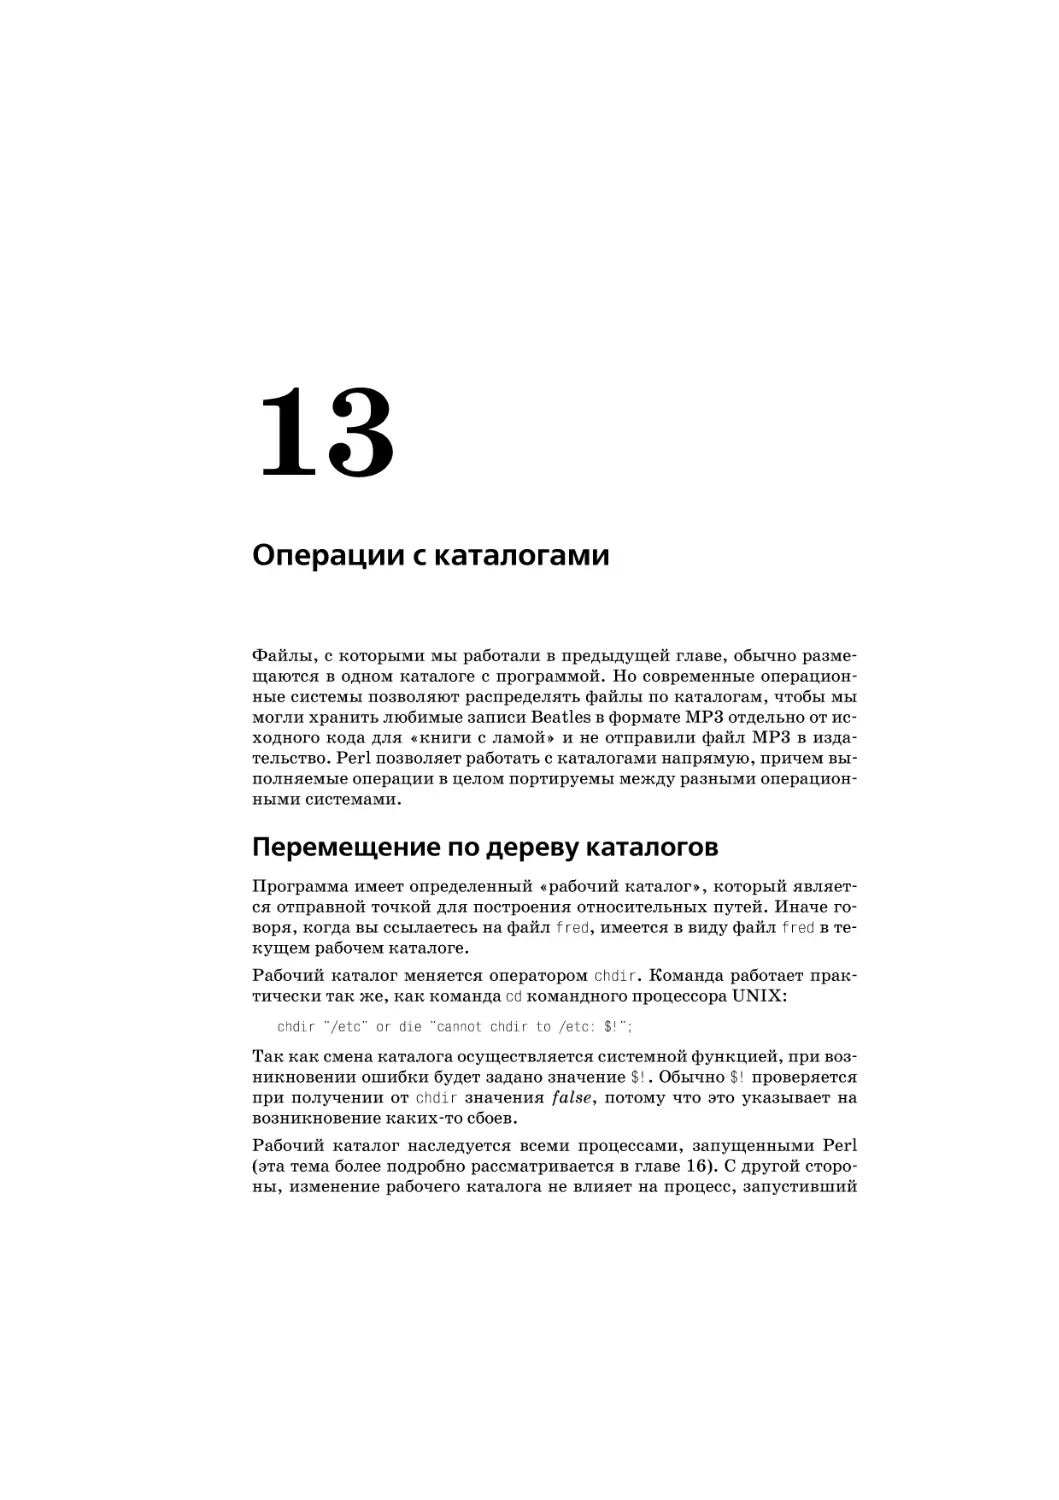 Глава 13. Операции с каталогами
Перемещение по дереву каталогов